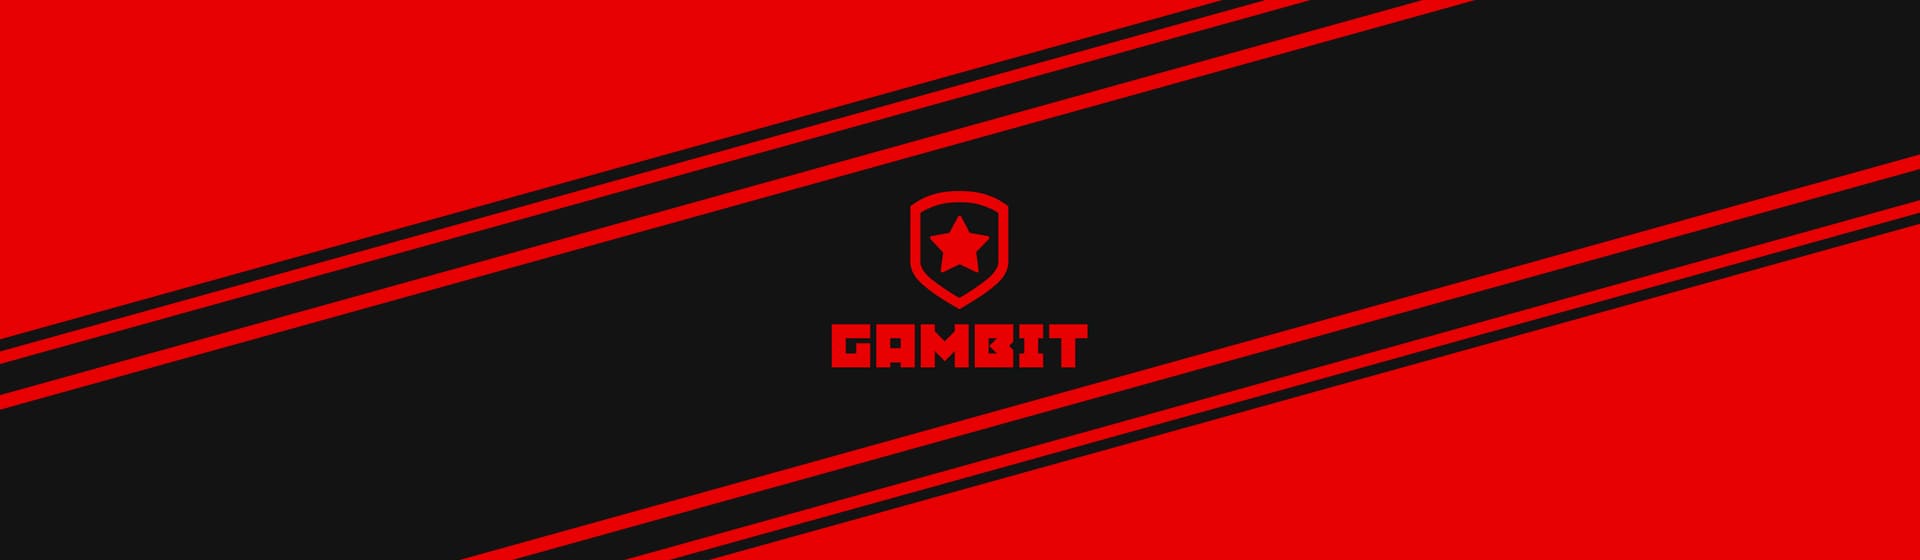 Gambit - Мерч и одежда с атрибутикой